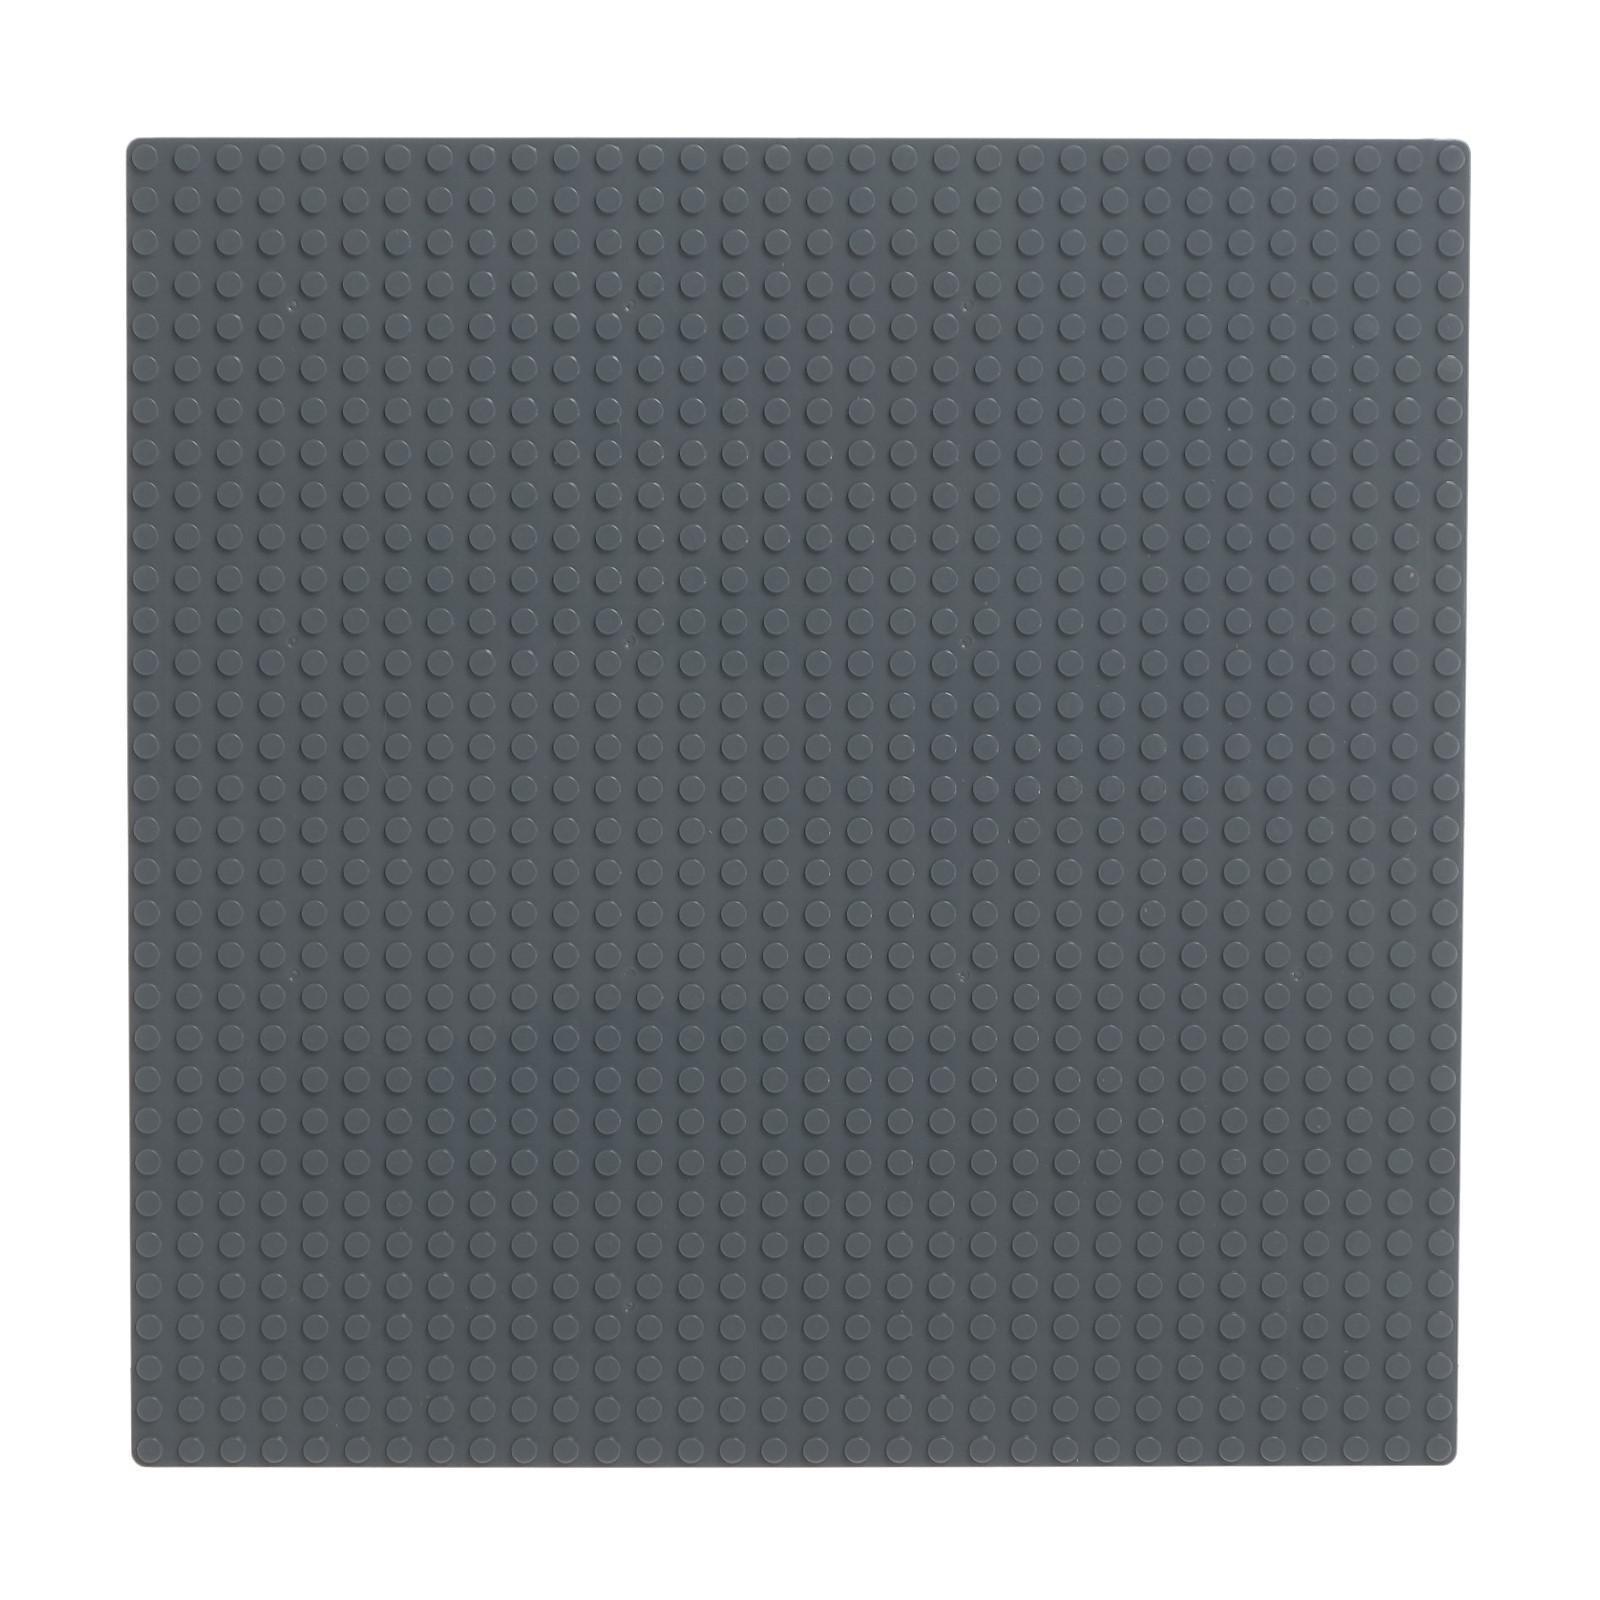 Строительная пластина-основание для конструктора ЛЕГО 25,5x25,5 см. 90004A / Серый